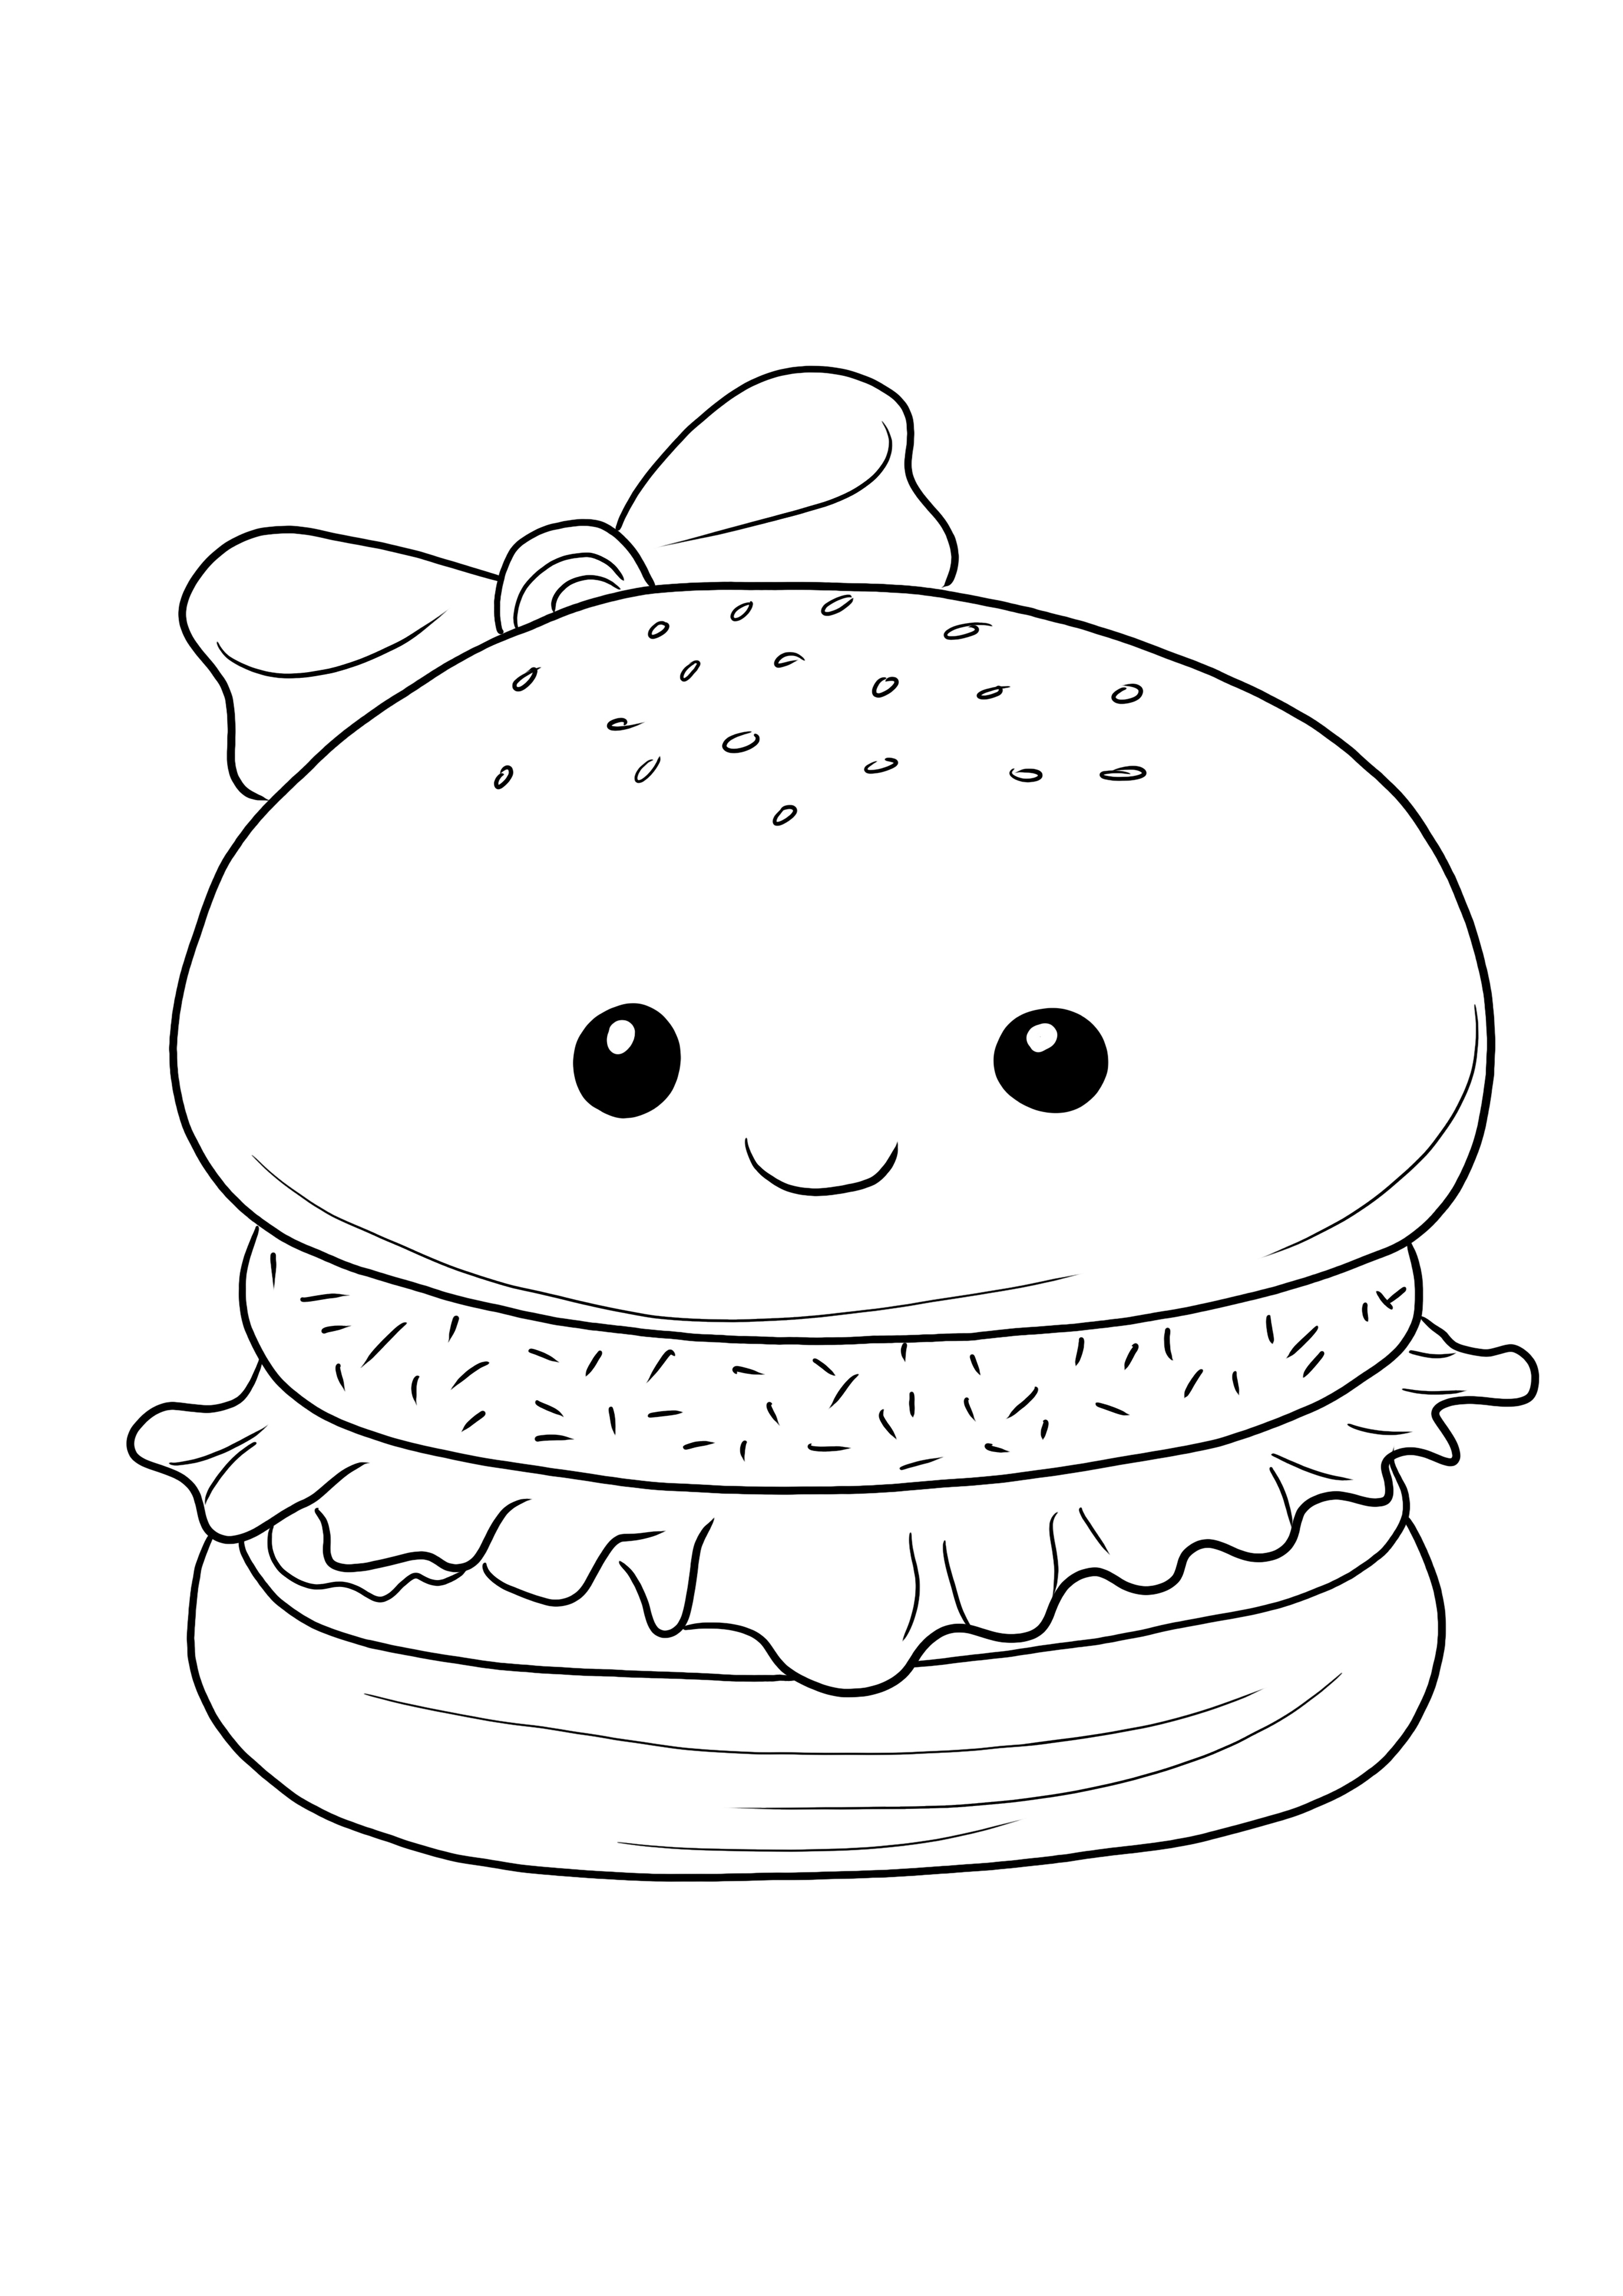 Çocukların eğlenerek öğrenmesi için renklendirilmeye hazır ücretsiz yazdırılabilir hamburger